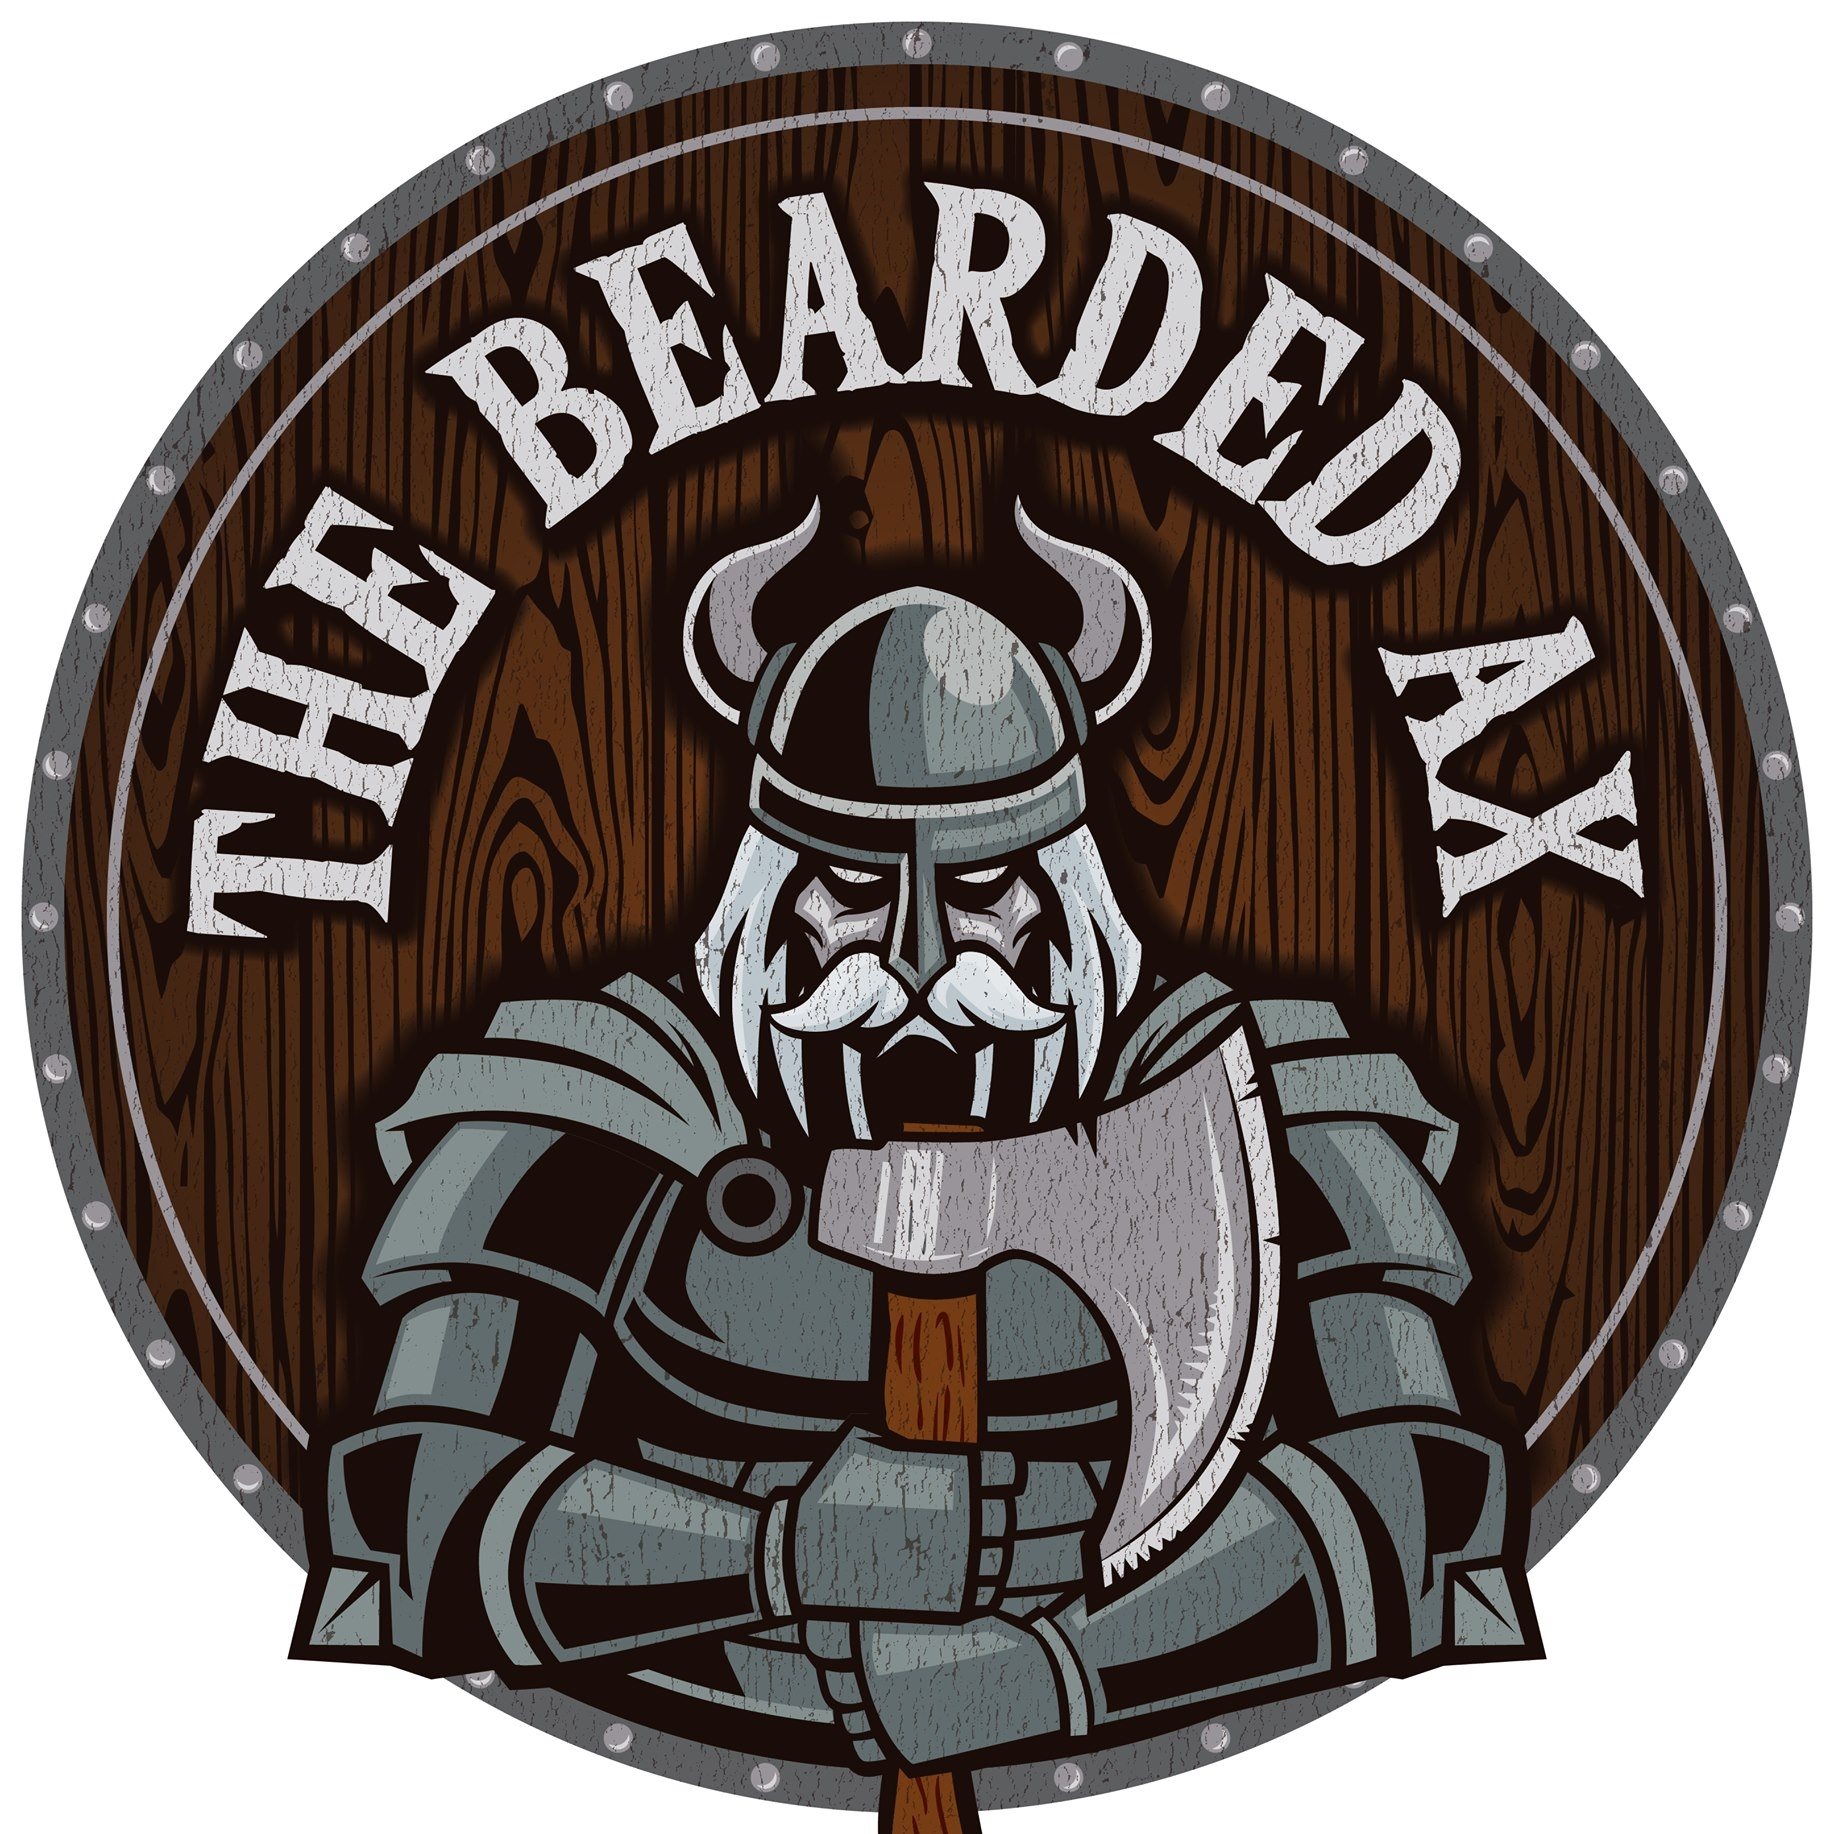 The Bearded Ax